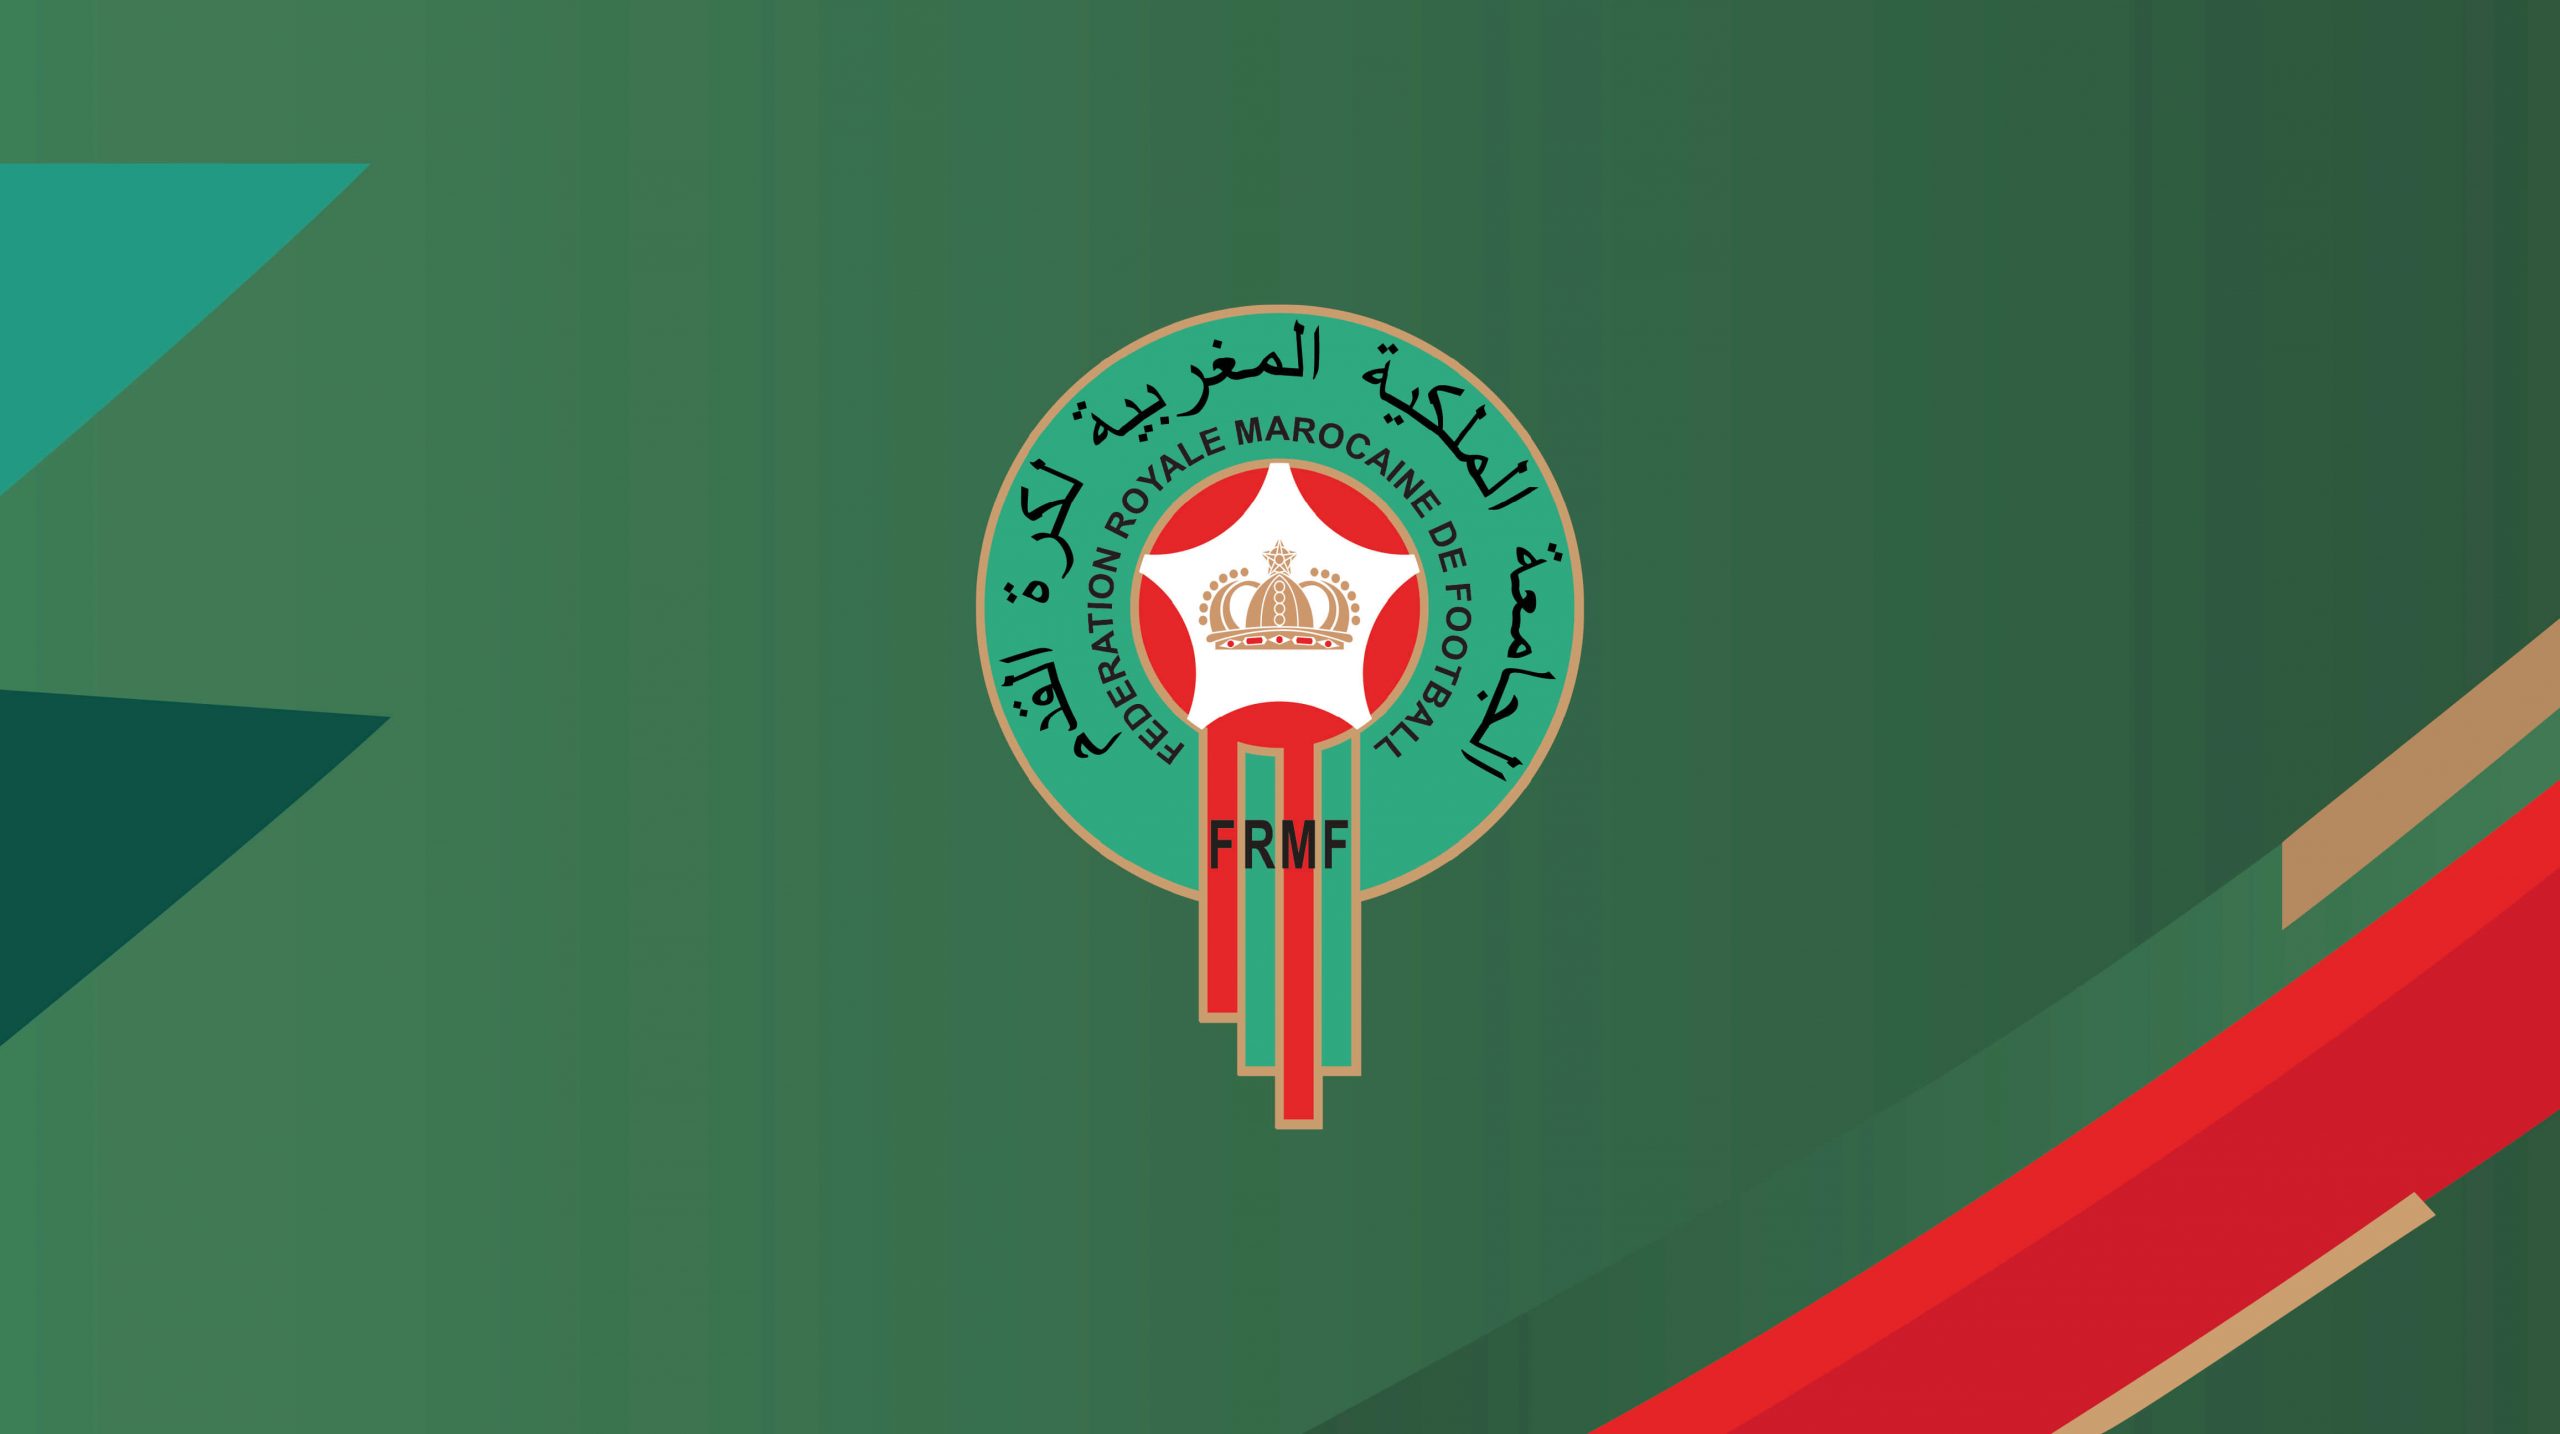 federation marocaine de football, frmf, الجامعة المغربية لكرة القدم